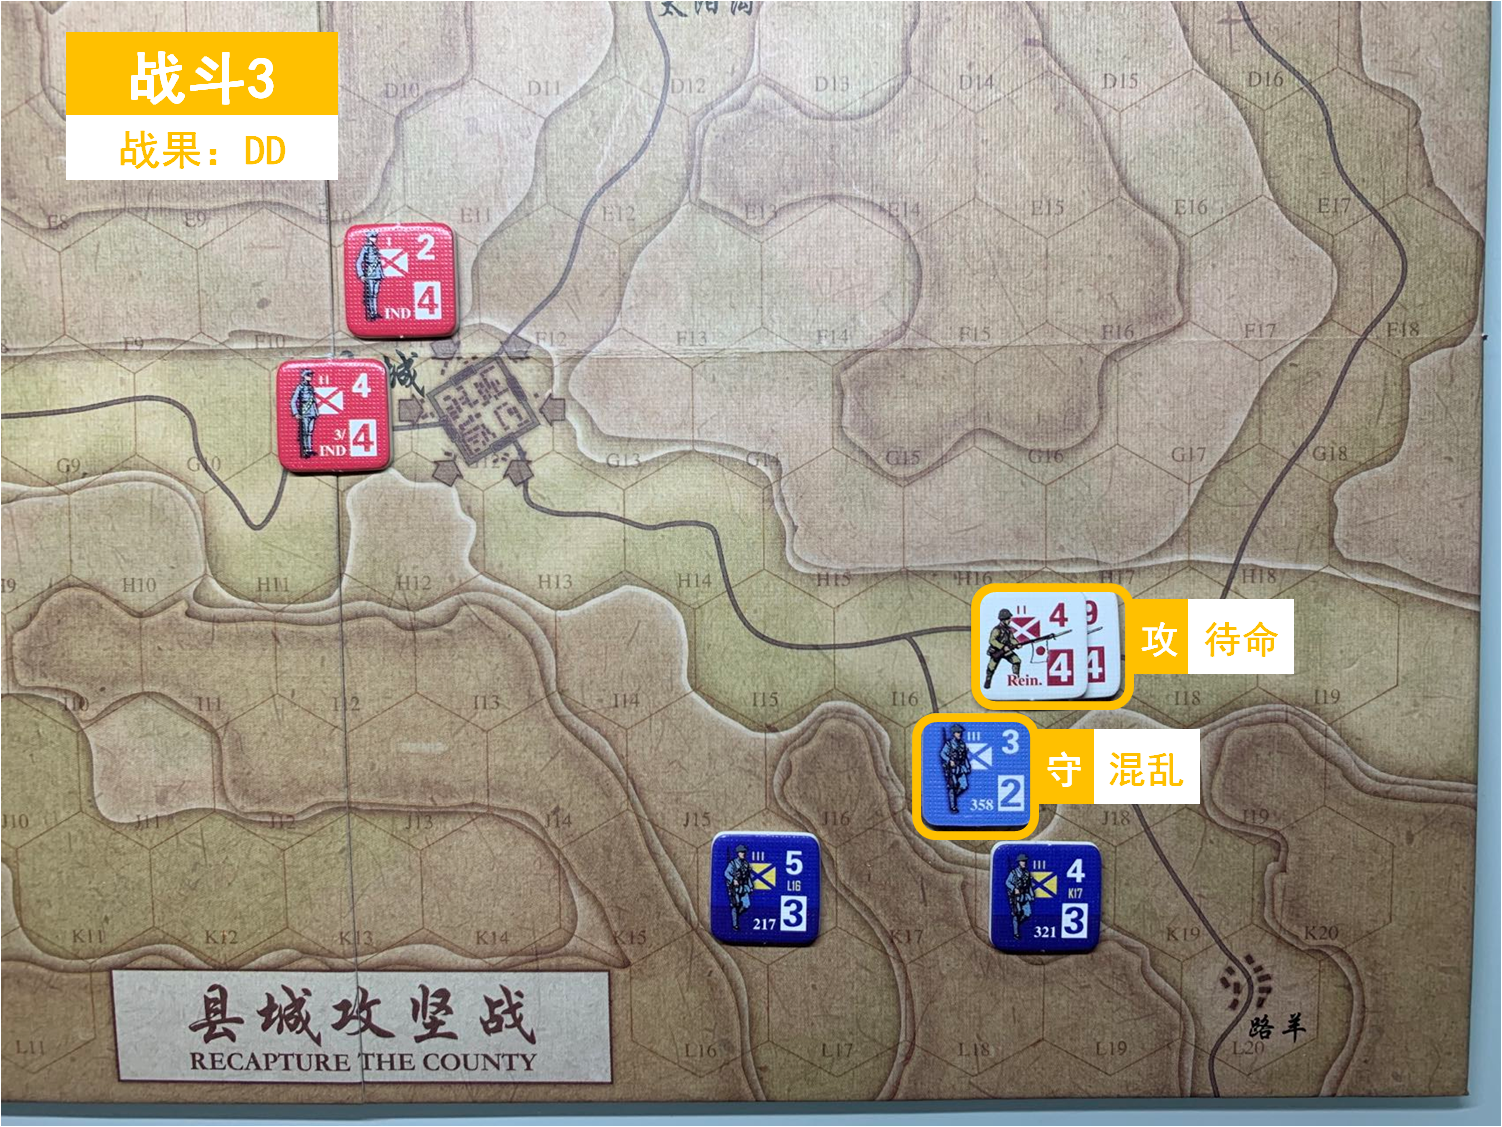 第二回合 日方戰鬥階段 戰鬥3 戰鬥結果